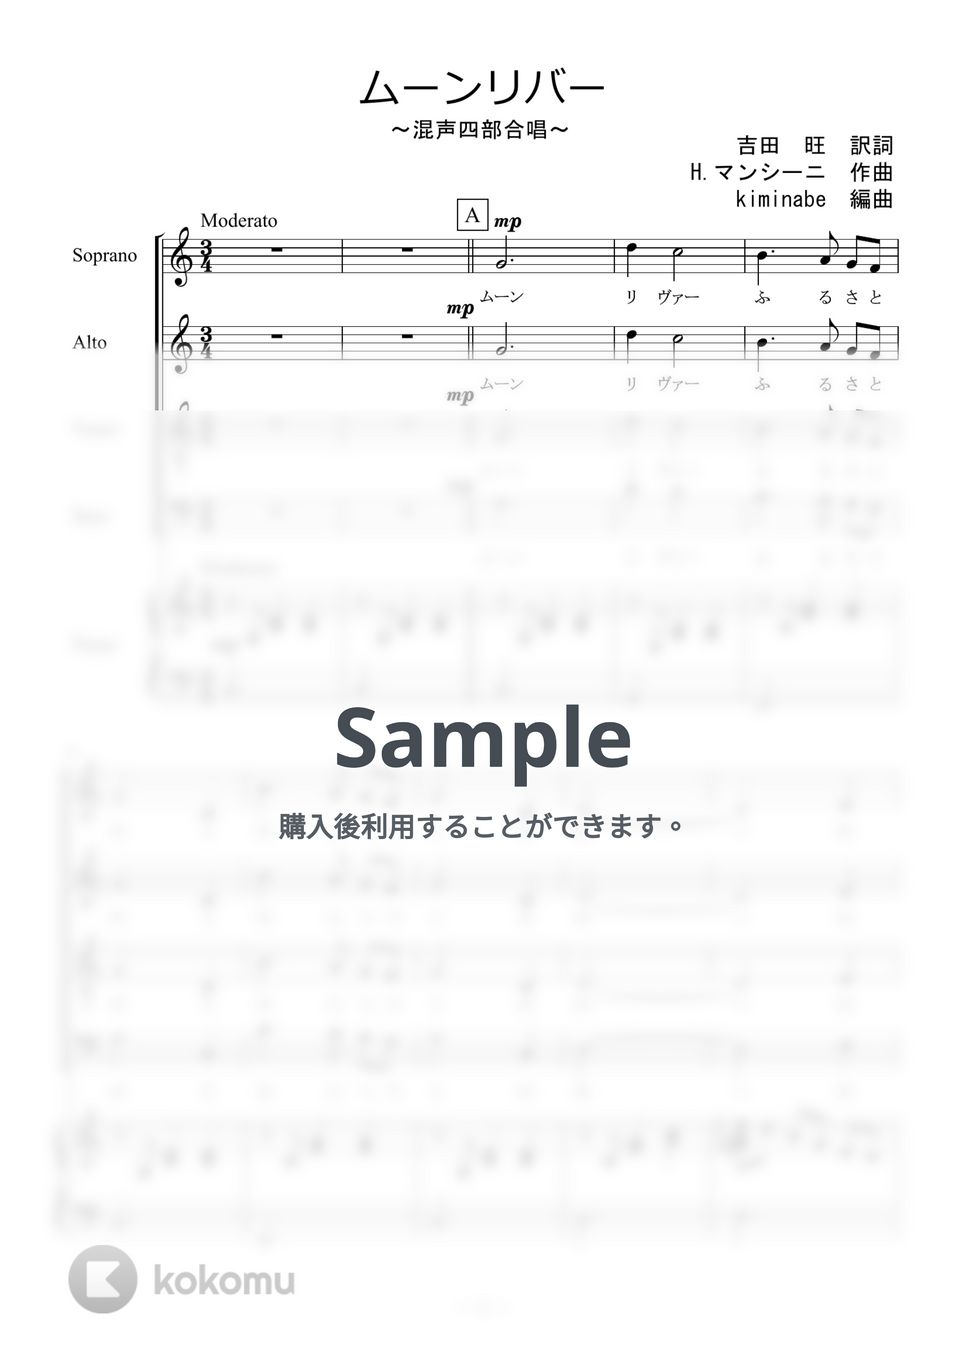 ヘンリー・マンシーニ - ムーンリバー (混声四部合唱) by kiminabe